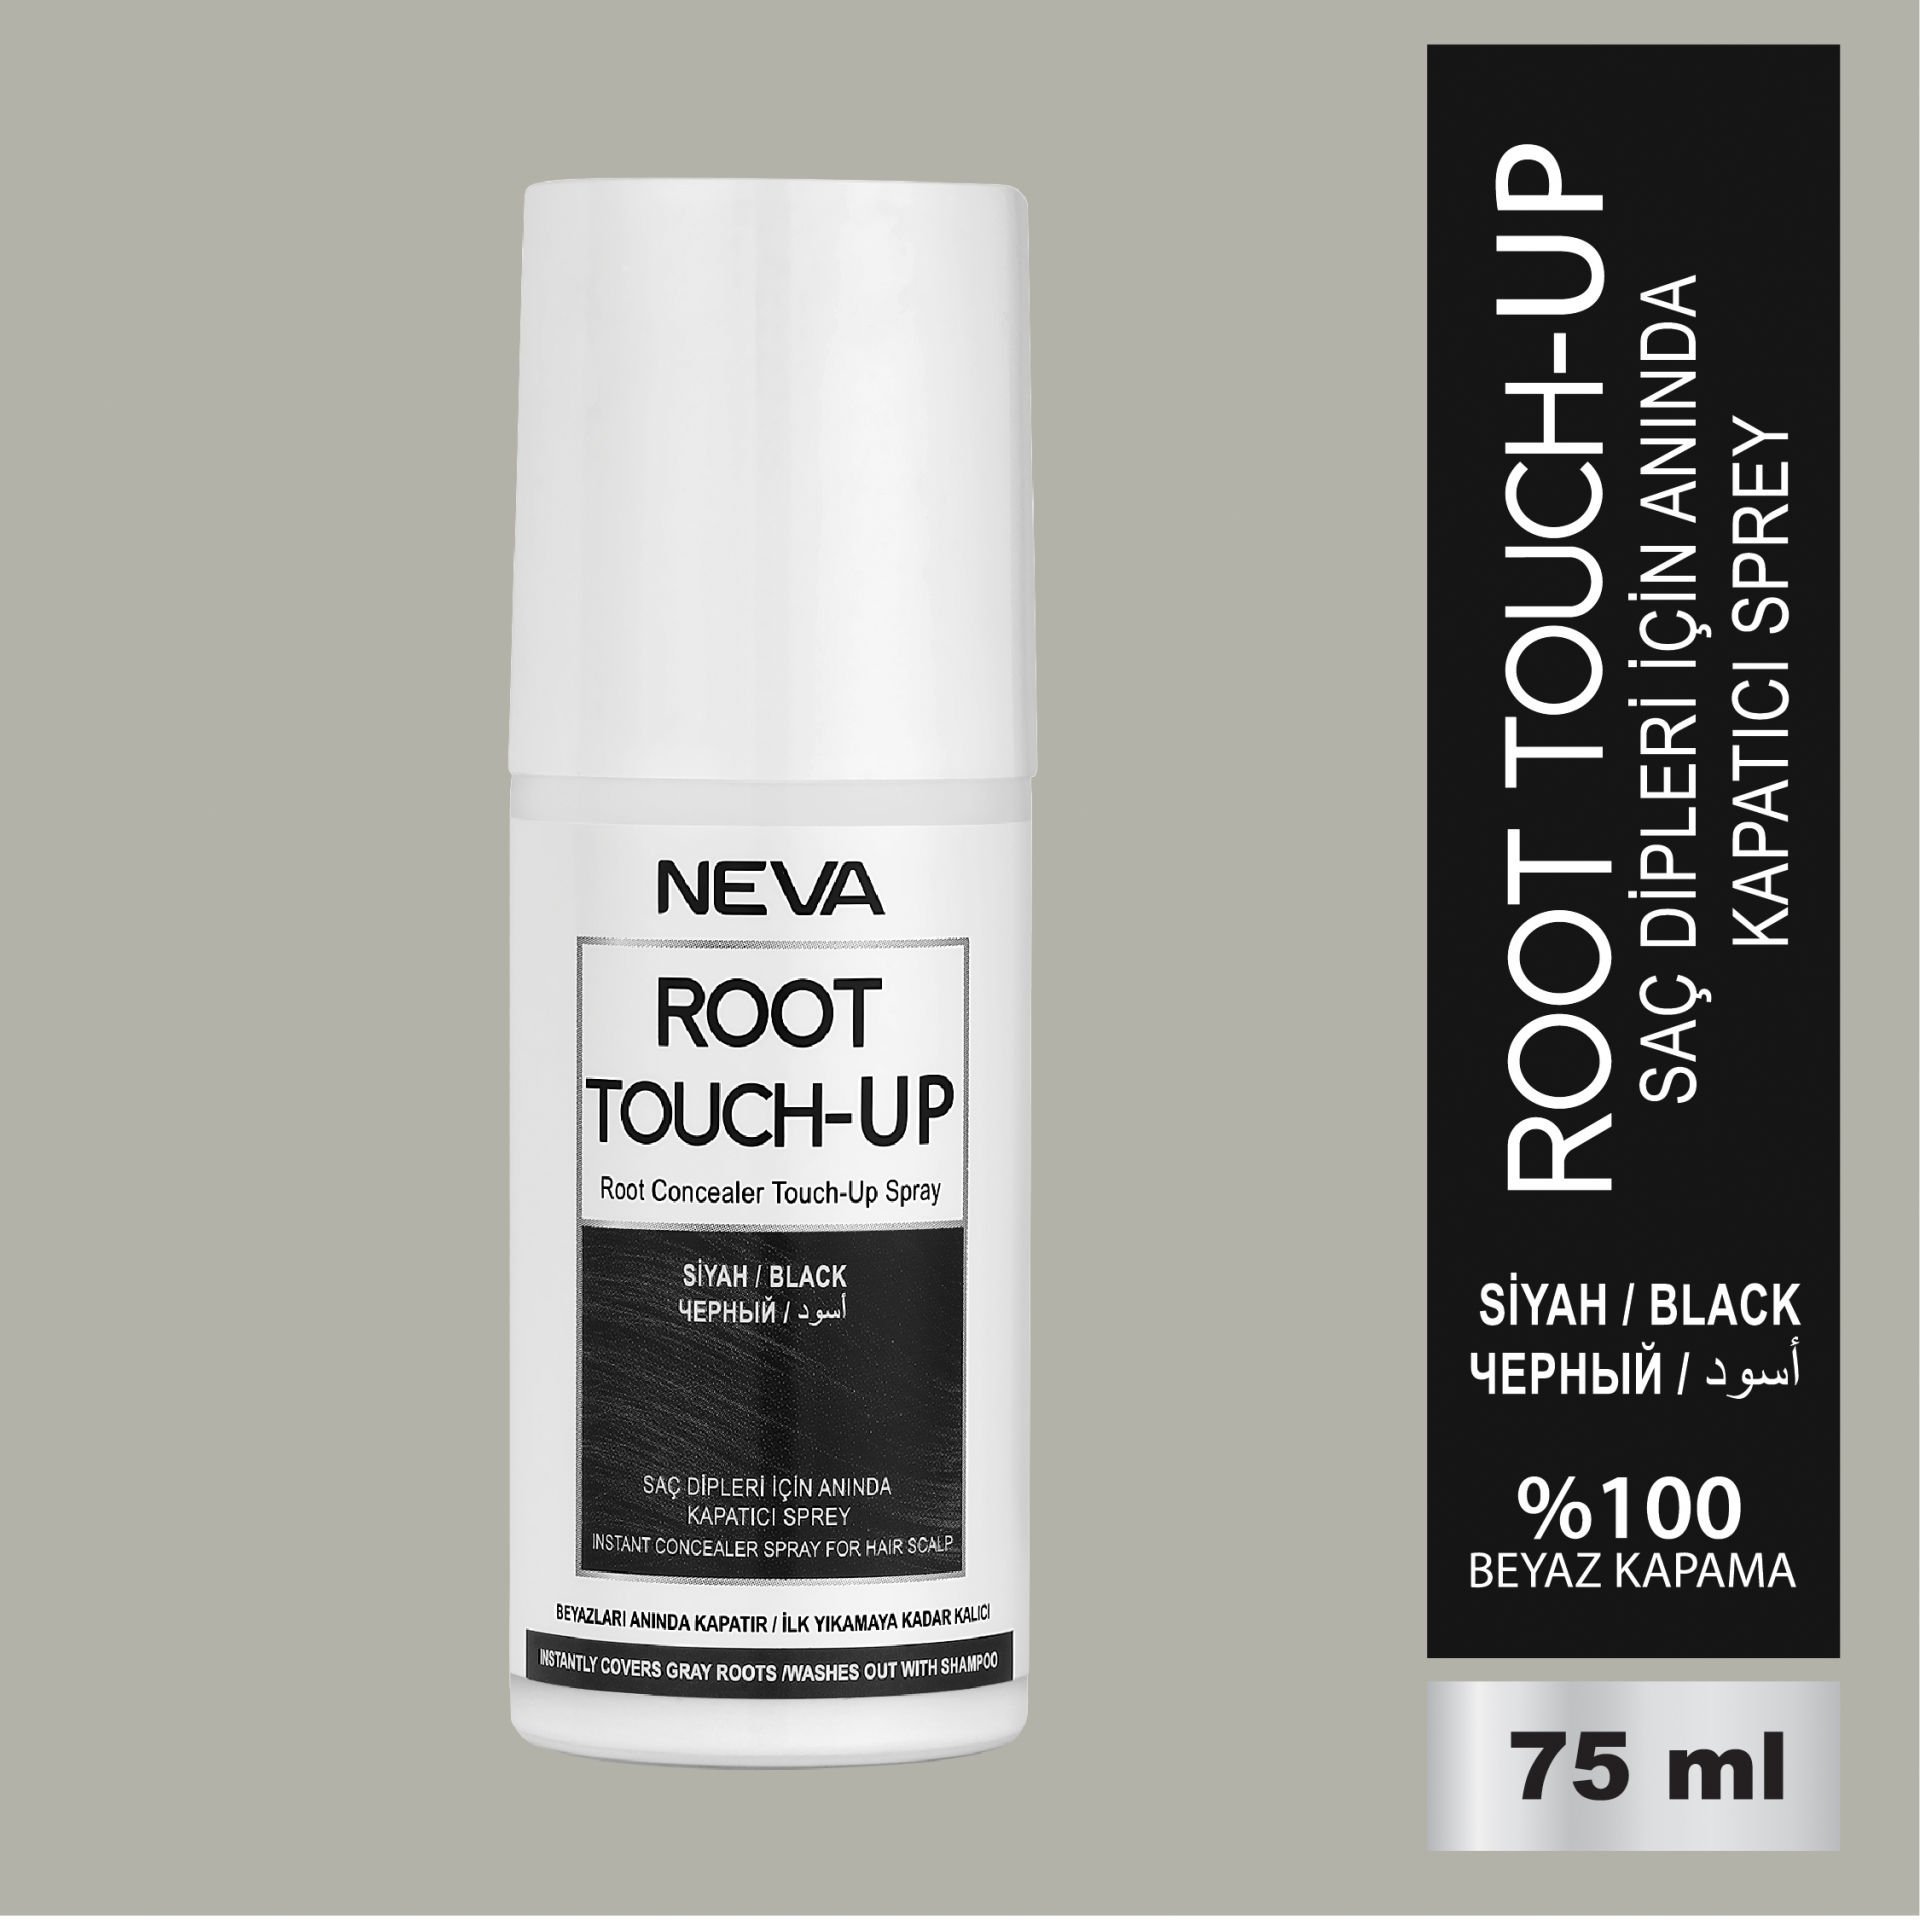 NEVA ROOT TOUCH-UP Saç Dipleri İçin Anında Kapatıcı Sprey- Siyah 75ml